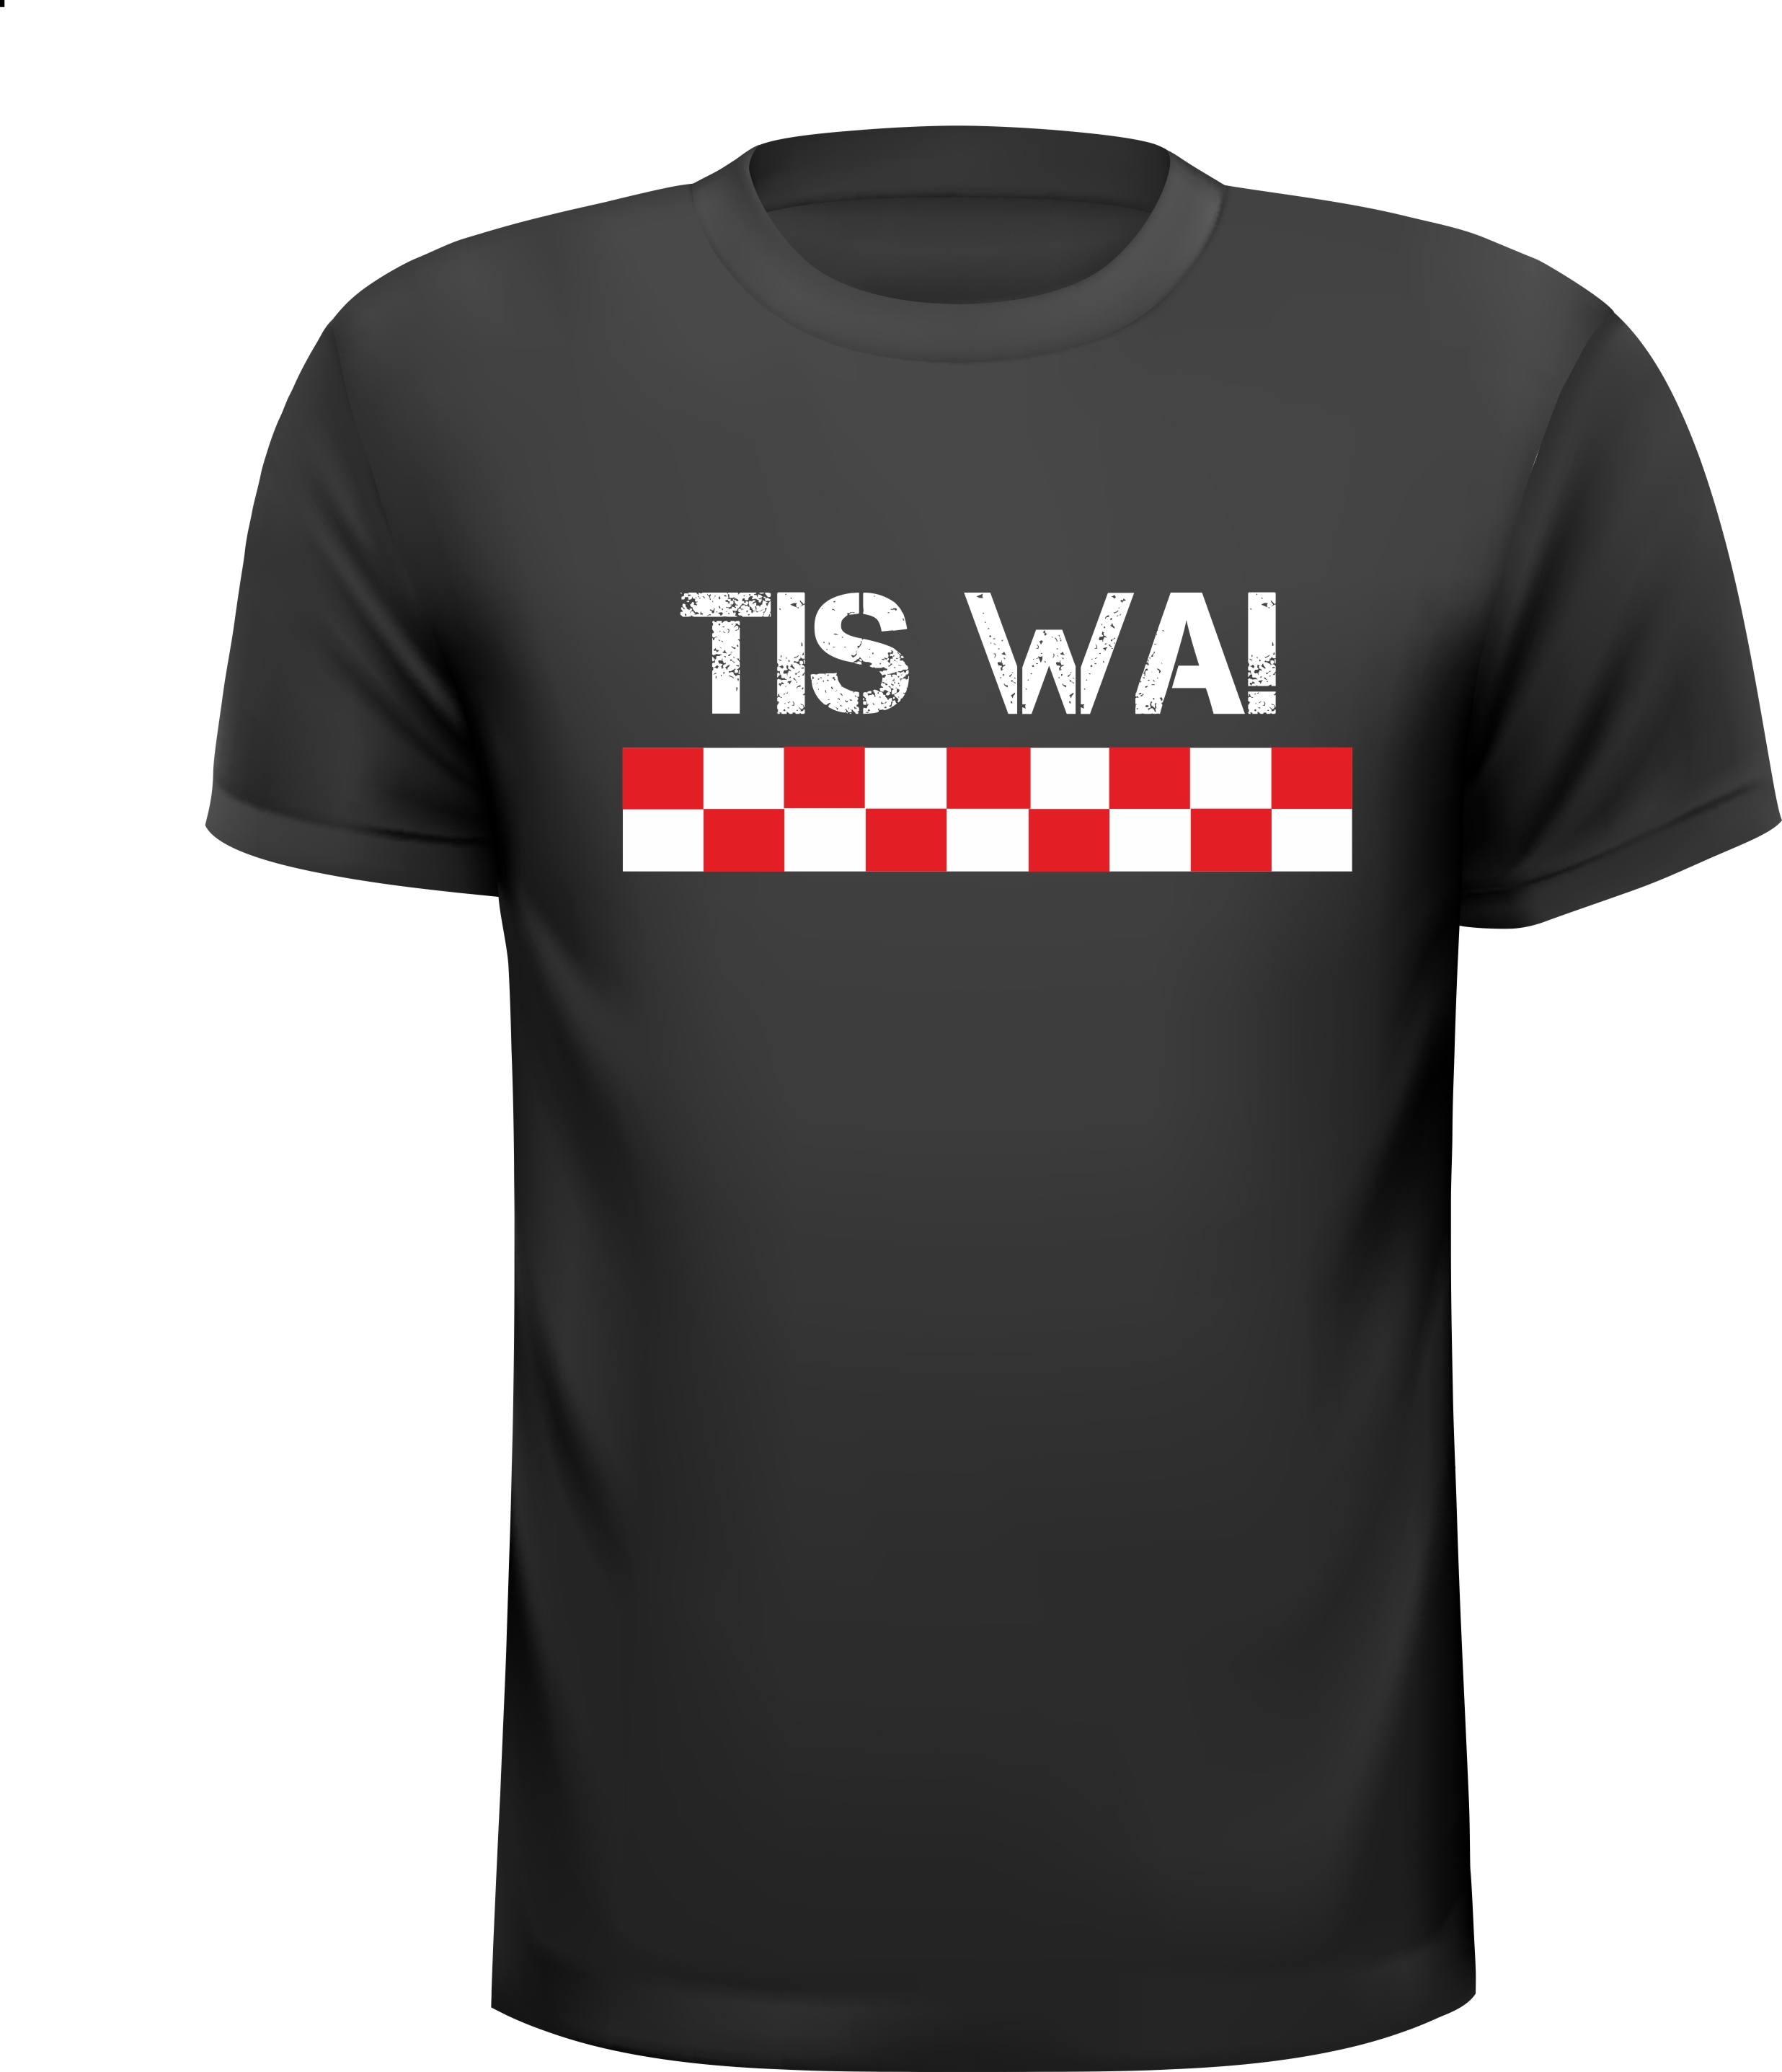 T-shirtje voor een het Carnaval Brabant Tis wa!